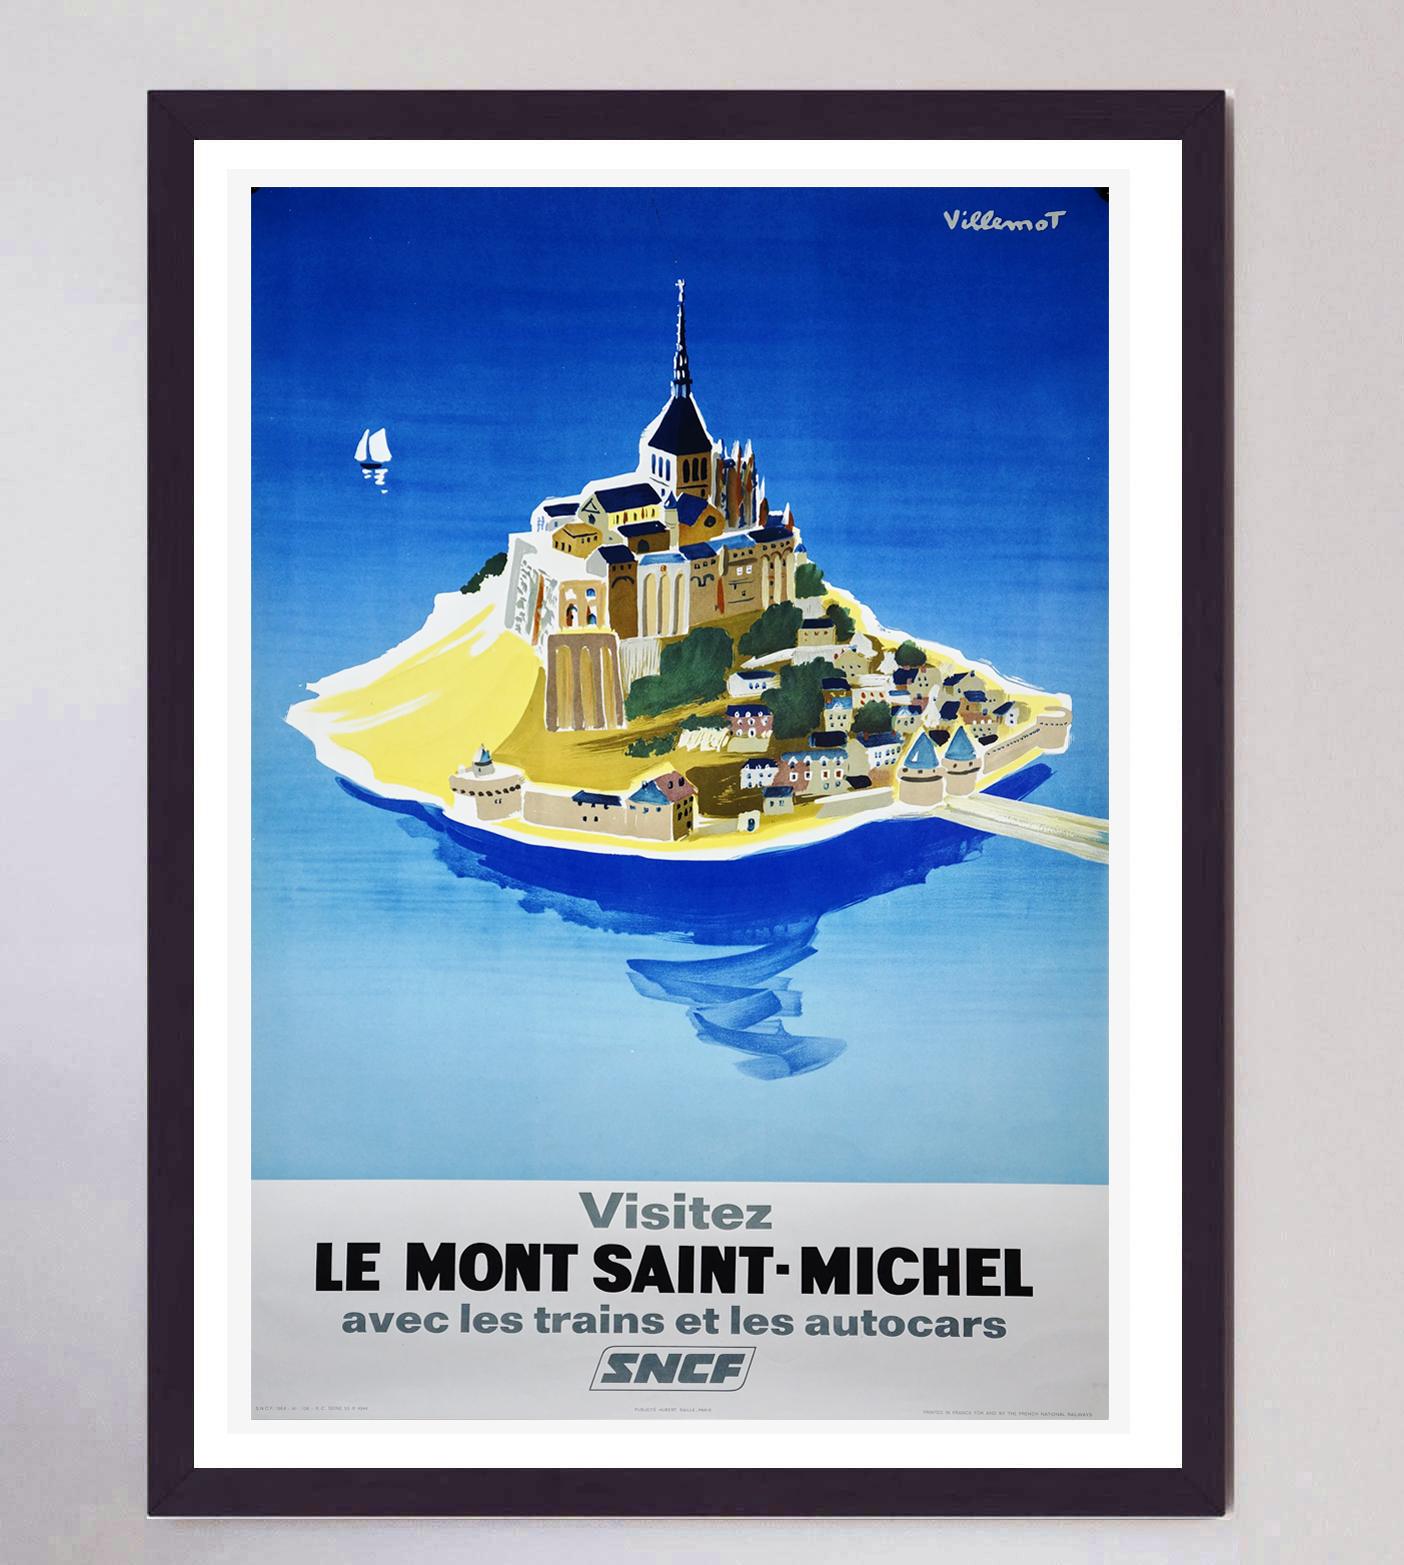 Cette superbe et rare affiche pour la SNCF a été conçue par l'iconique affichiste et graphiste Bernard Villemot. Plus connu pour ses collaborations avec des entreprises telles que Bally, Air France et Perrier, il est reconnu comme l'un des plus